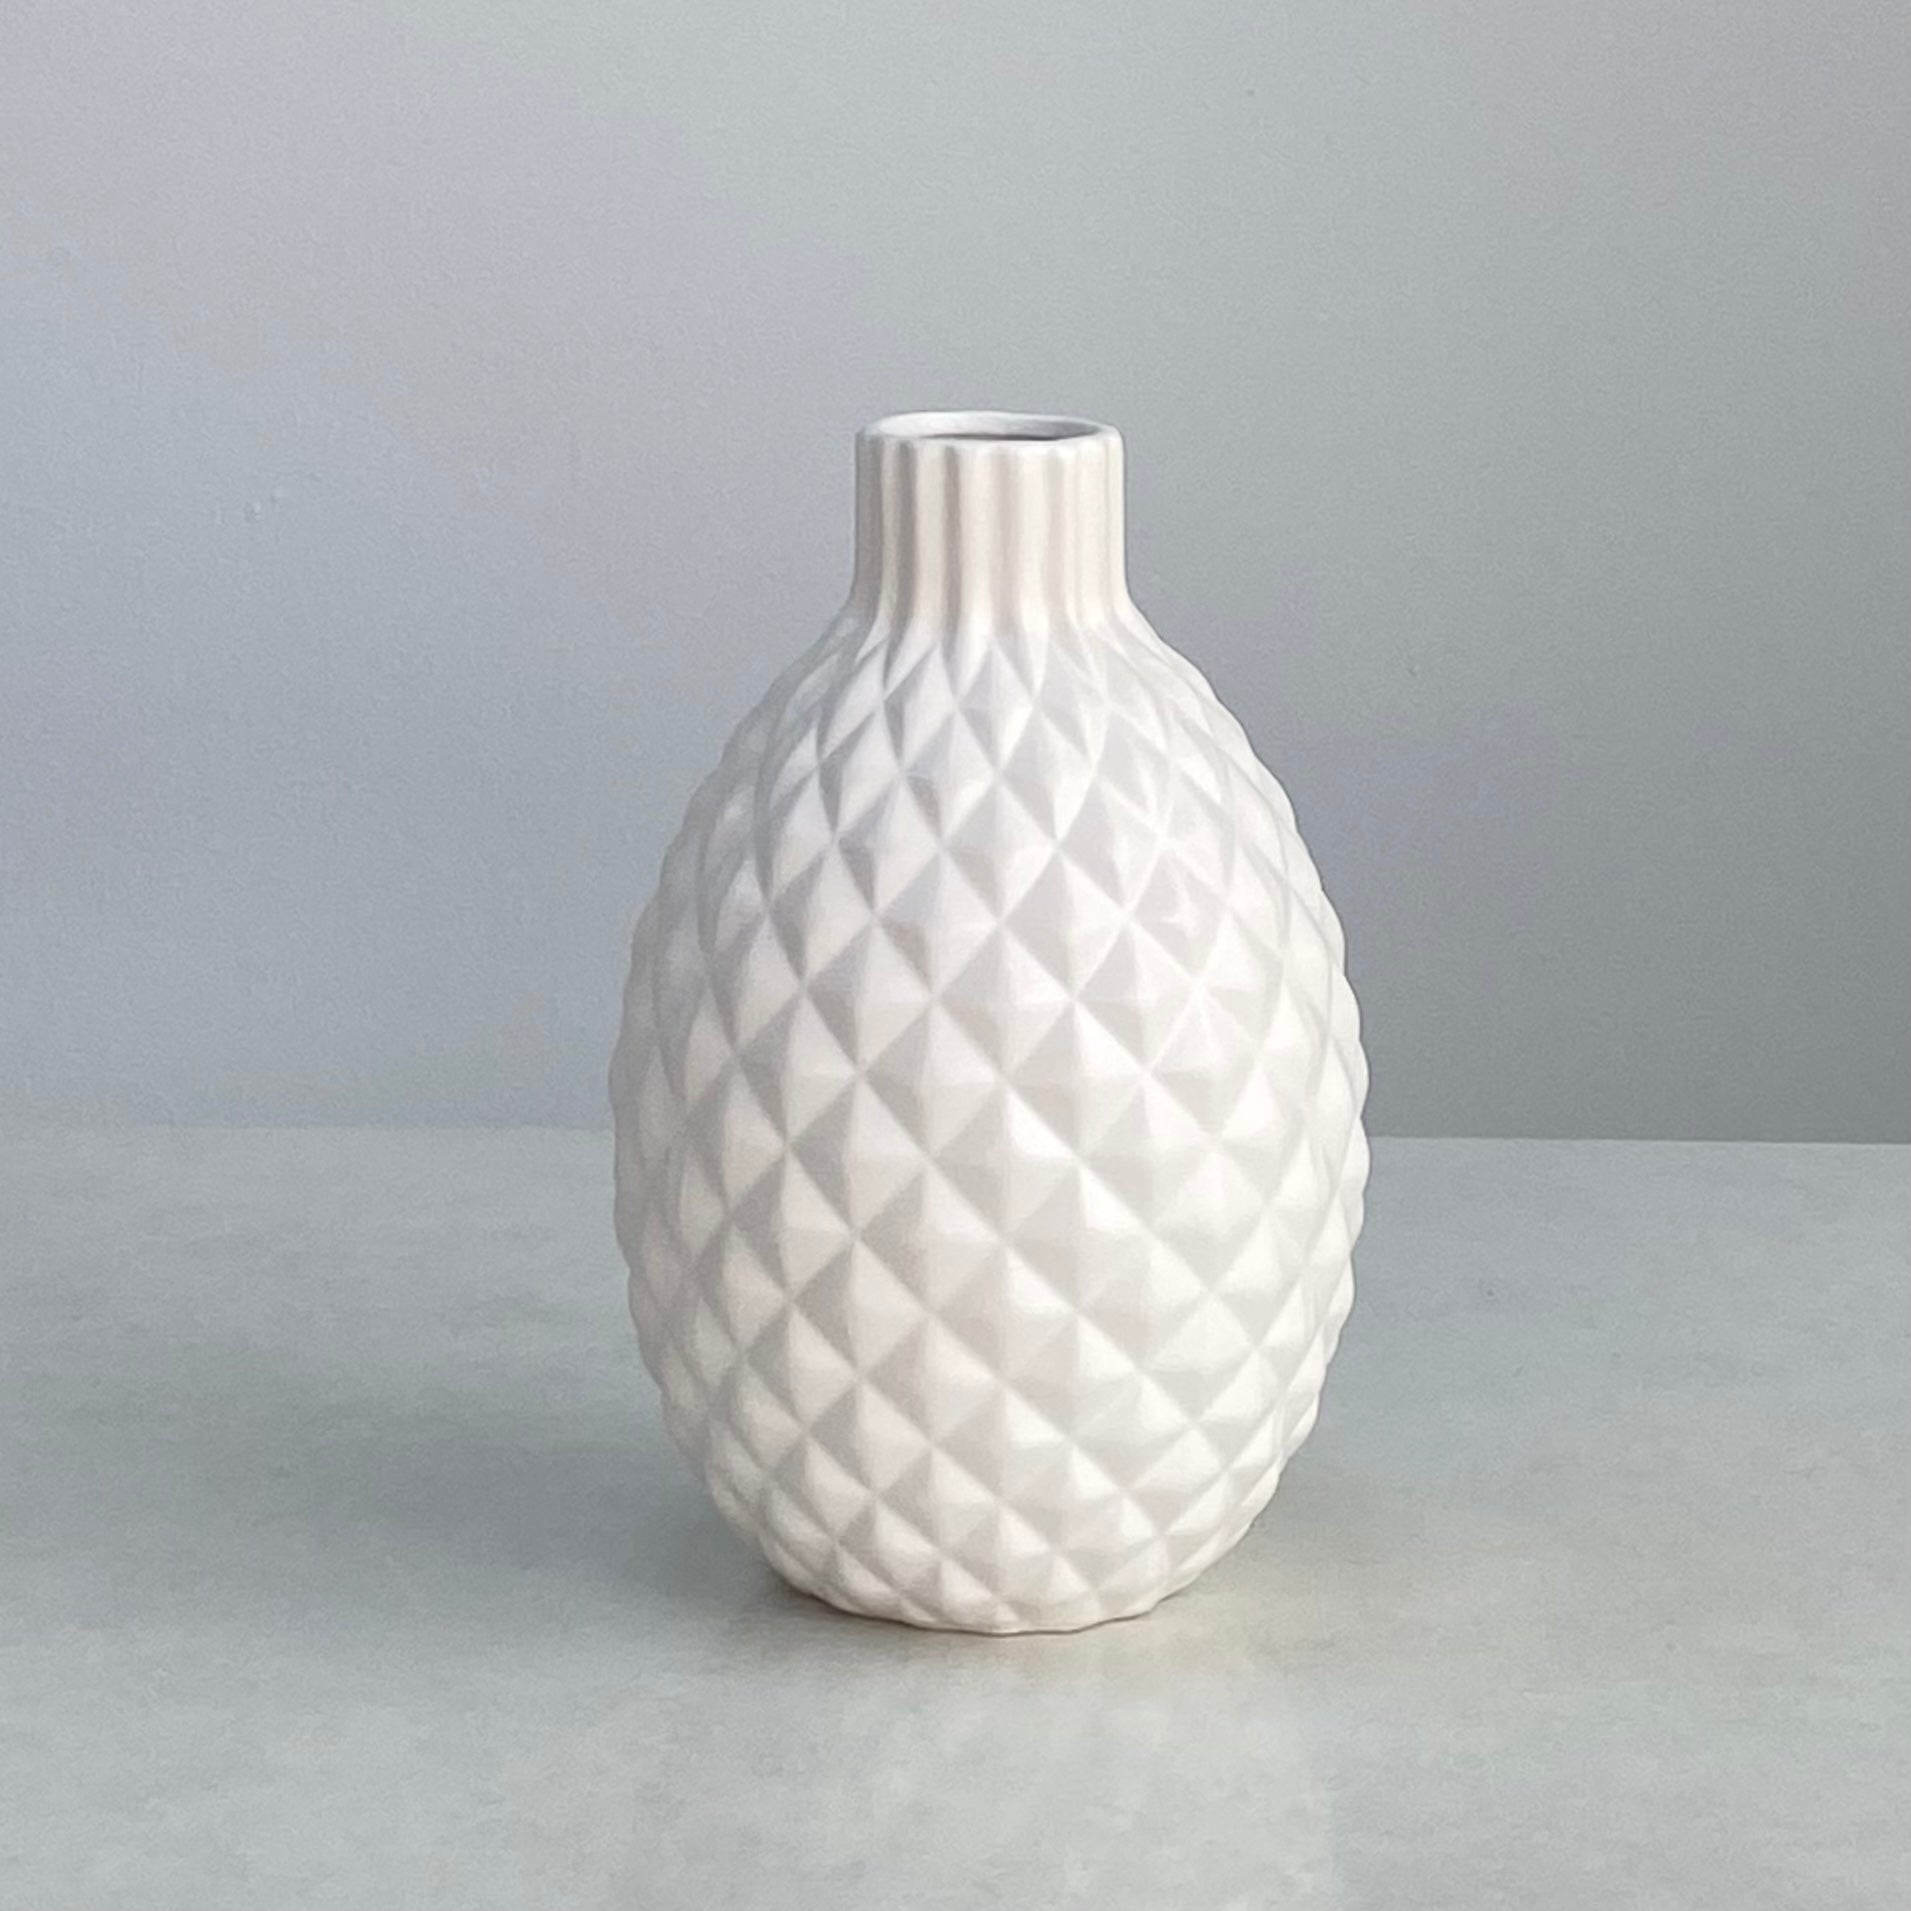 Ceramic Bellied White Vase Engraved Diamond Design